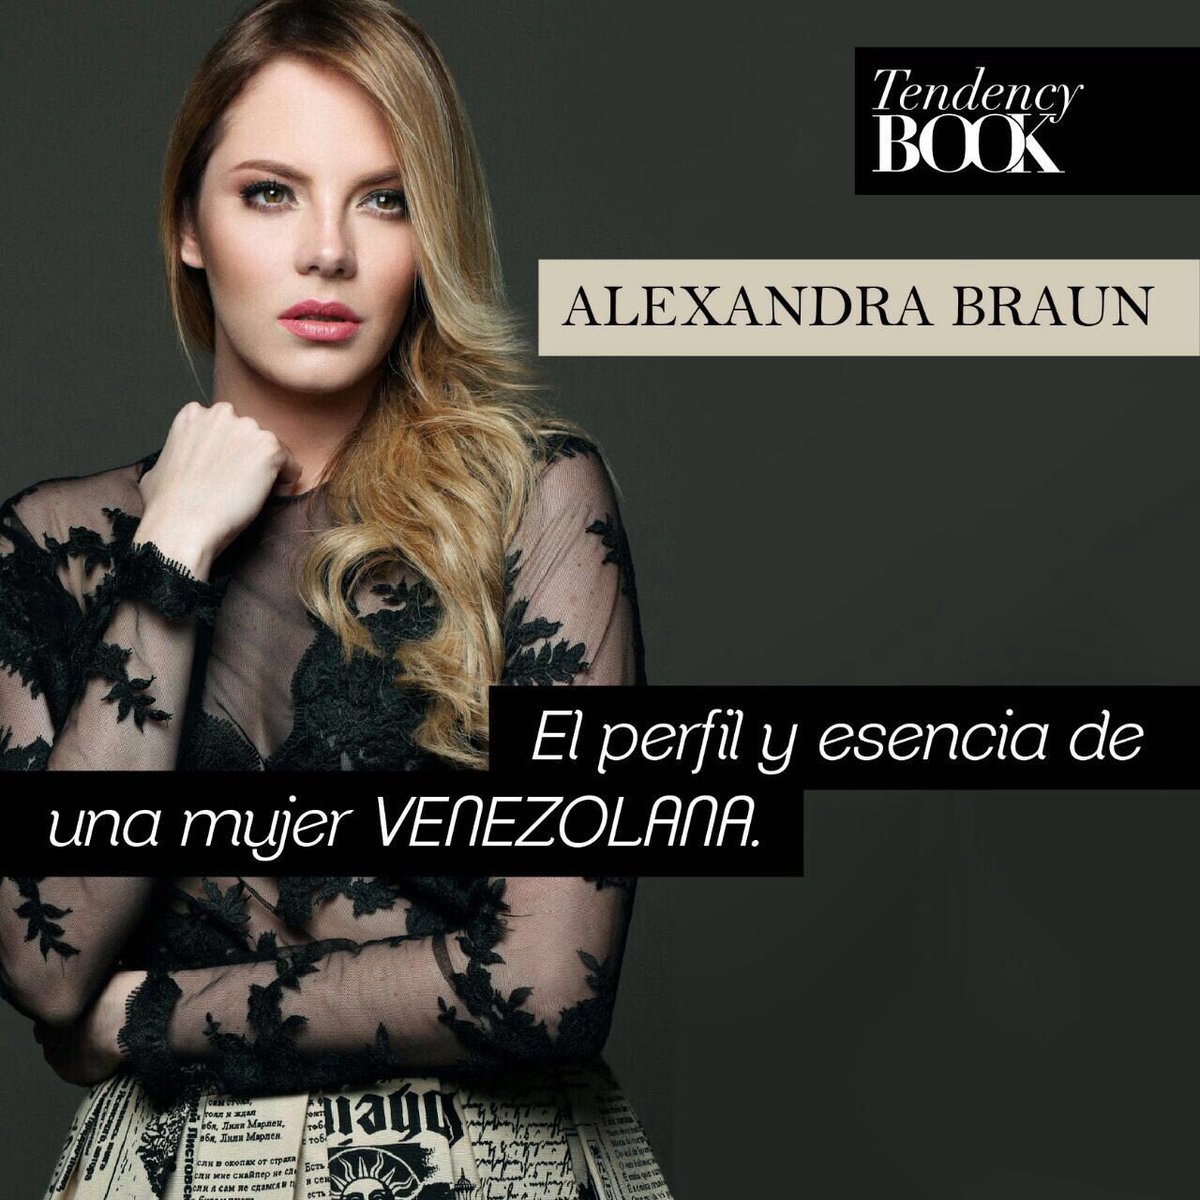 ¿Ya leiste la entrevista a @alebraun en TendencyBook? ¡No te la pierdas! ow.ly/xgz7305qezH #AlexandraBraun #TendencyBook #Venezuela